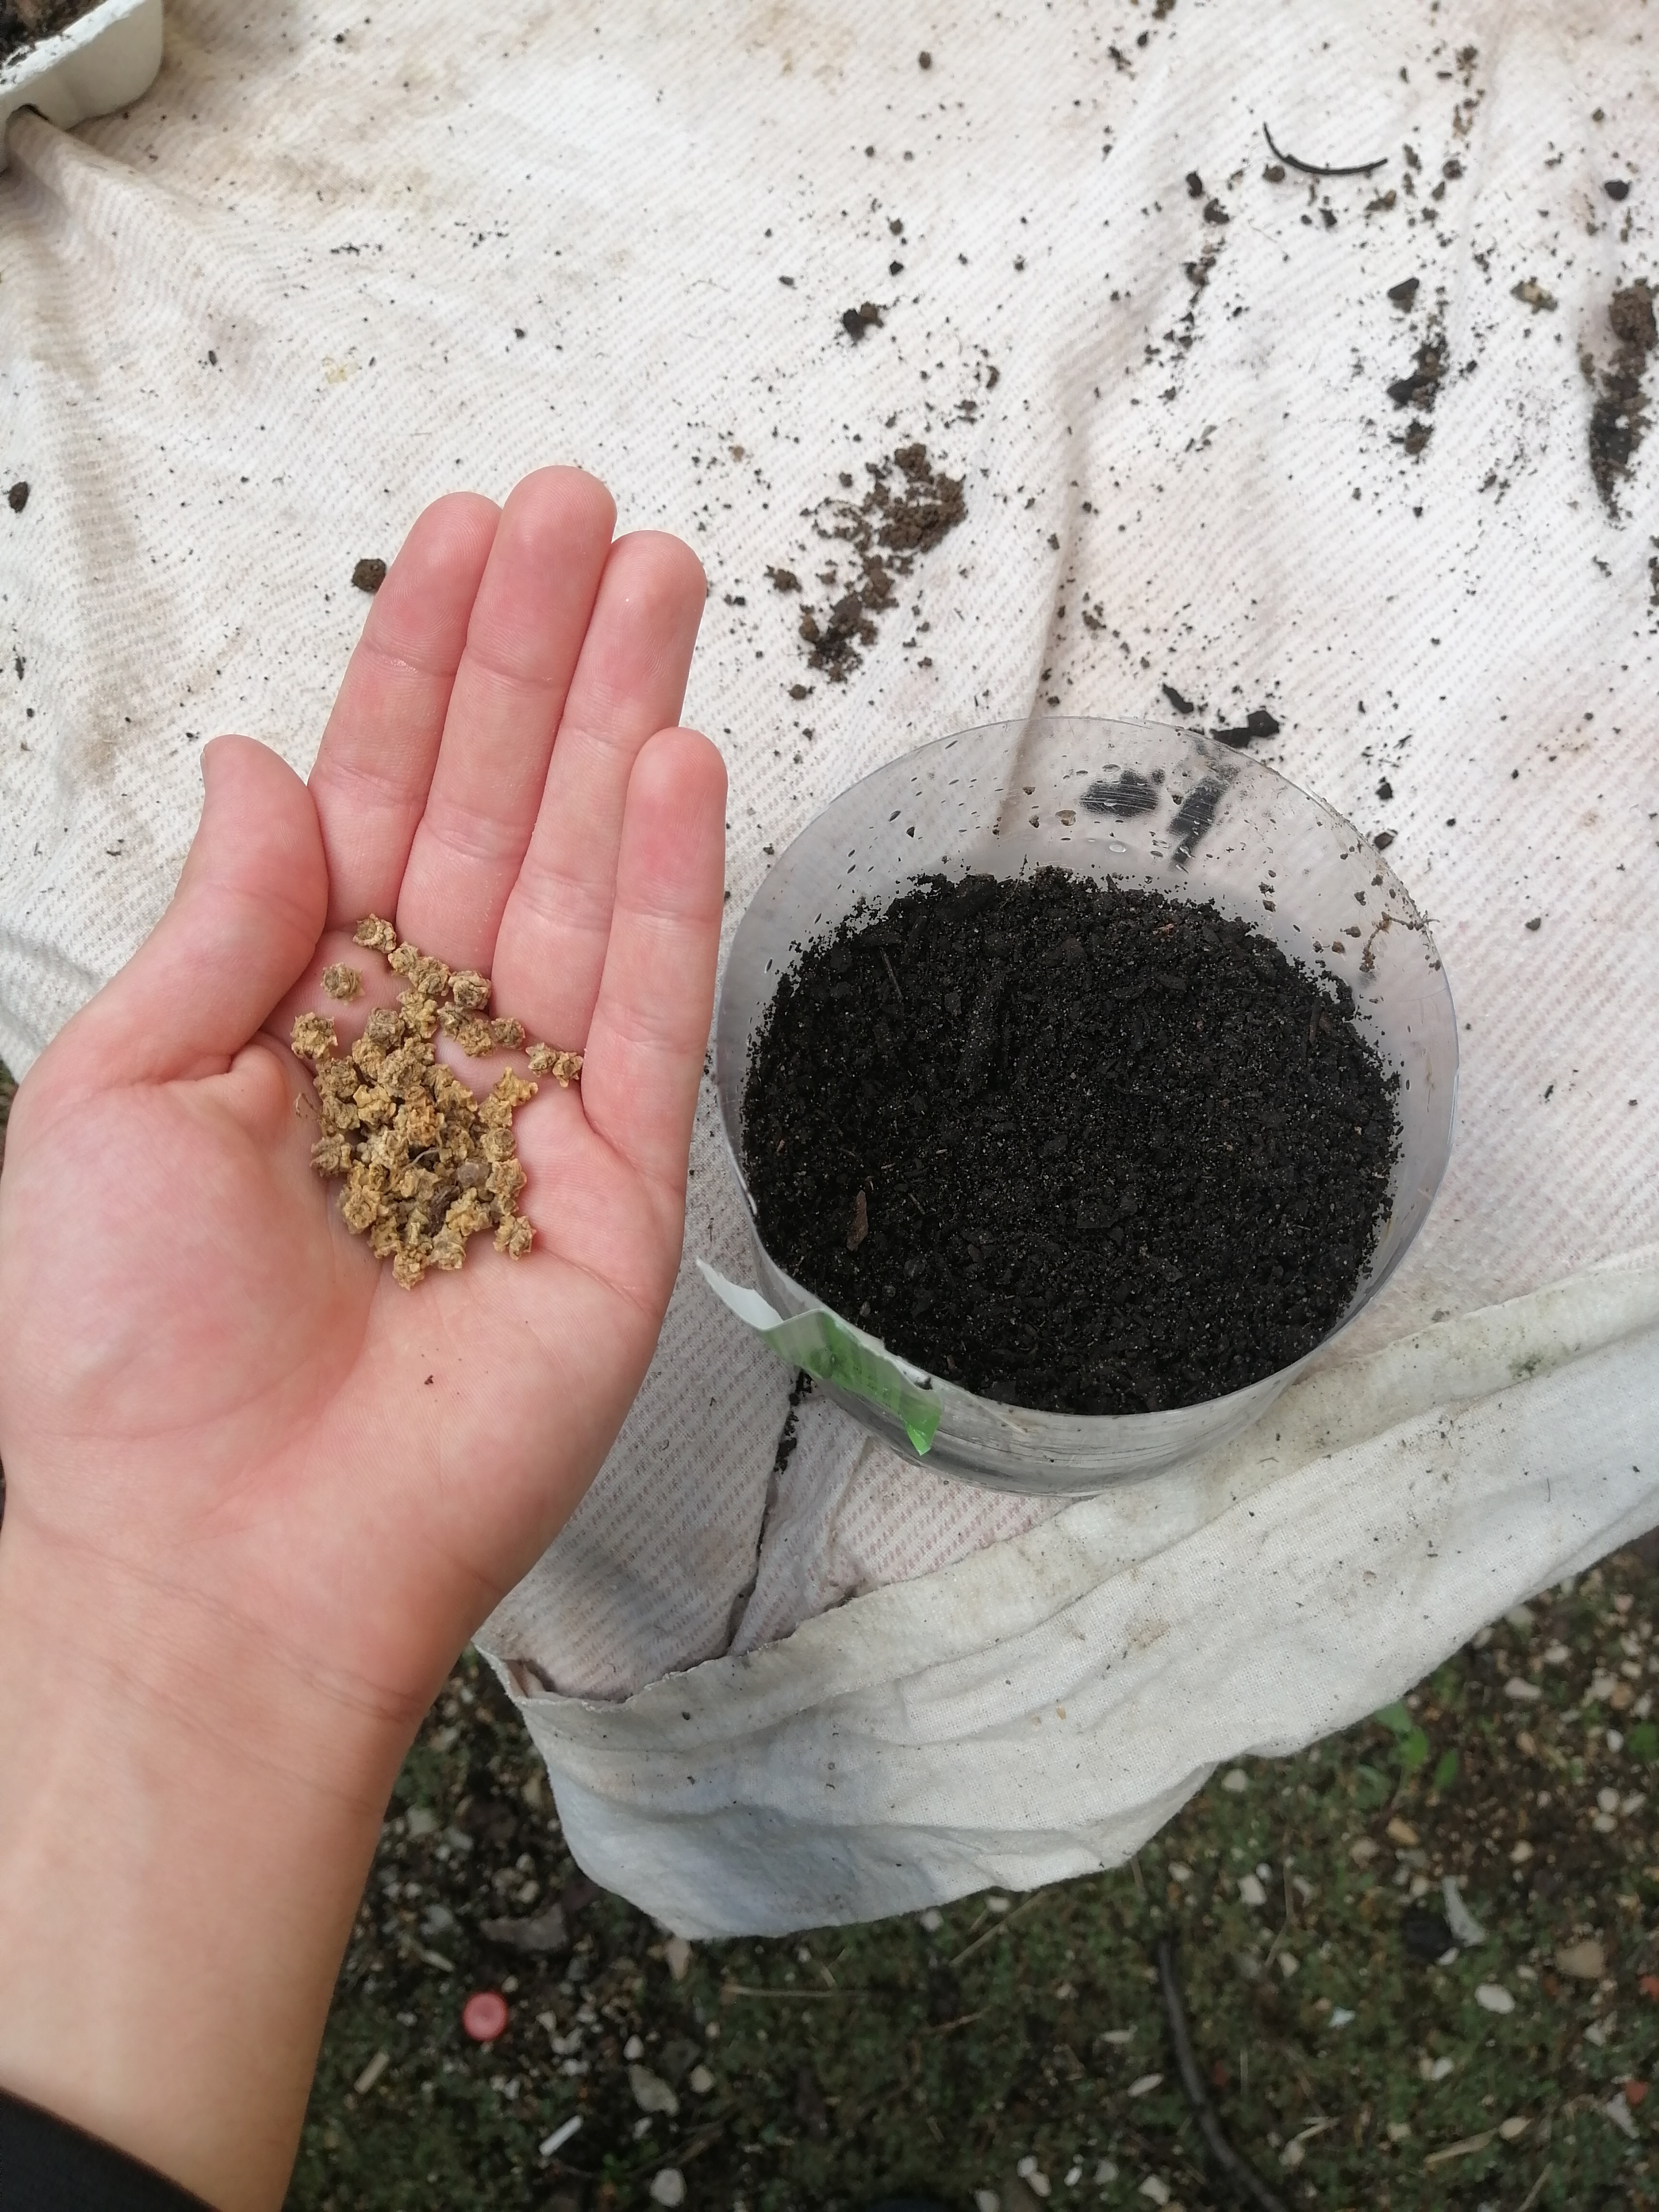 Foto 1- Deitar a semente à terra